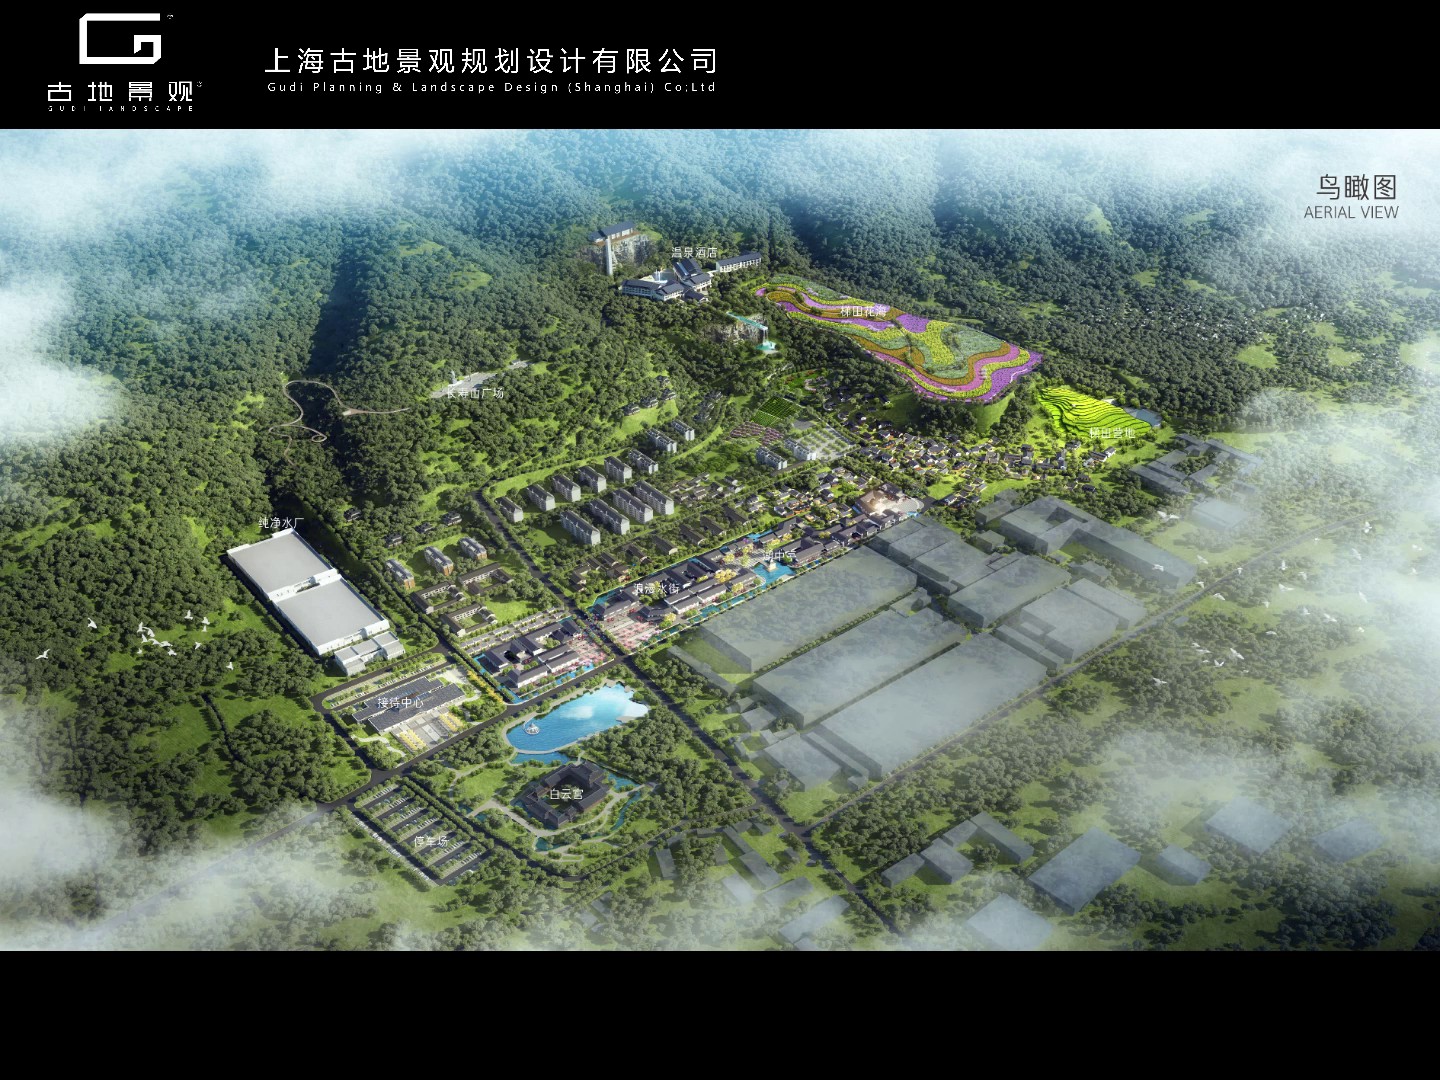 杨浦区住宅园林景观设计,园林景观